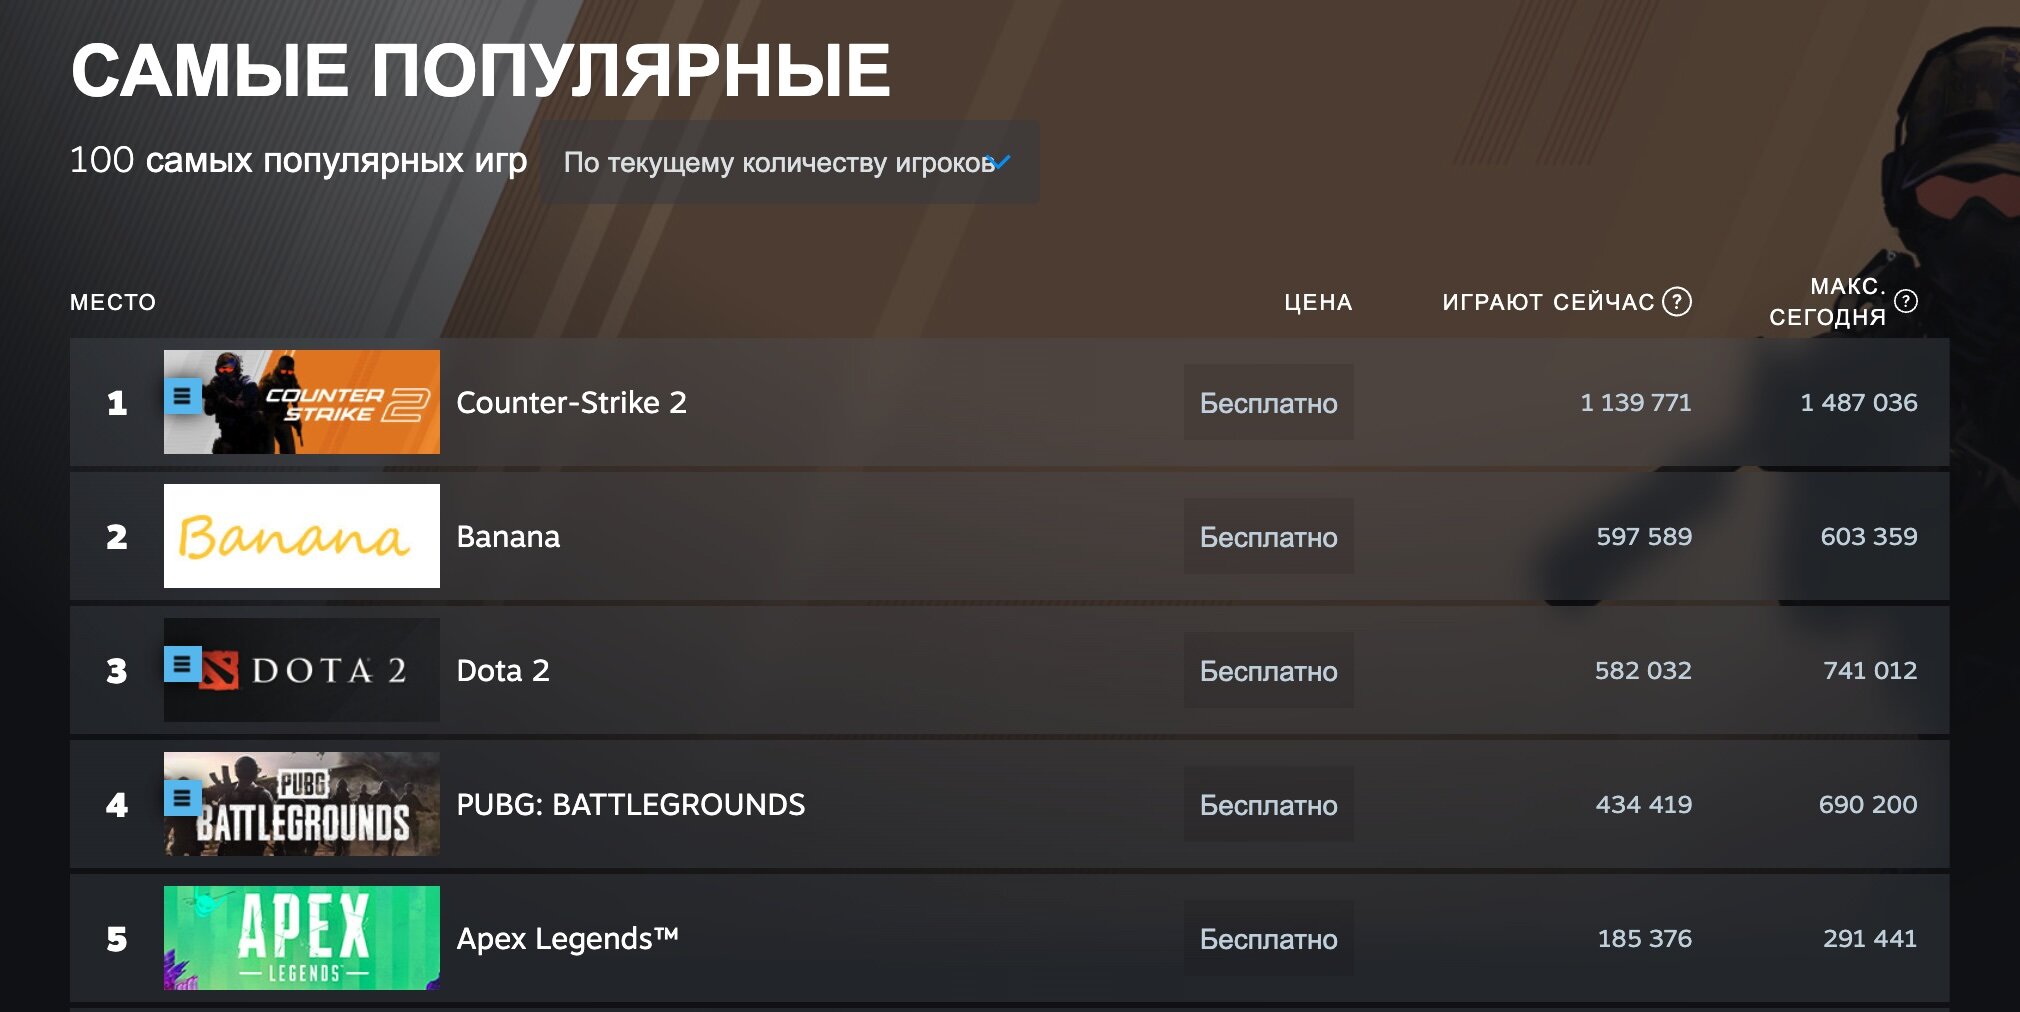 Кликер Banana занял второе место по онлайну в Steam: игра обошла культовые мультиплеерные проекты